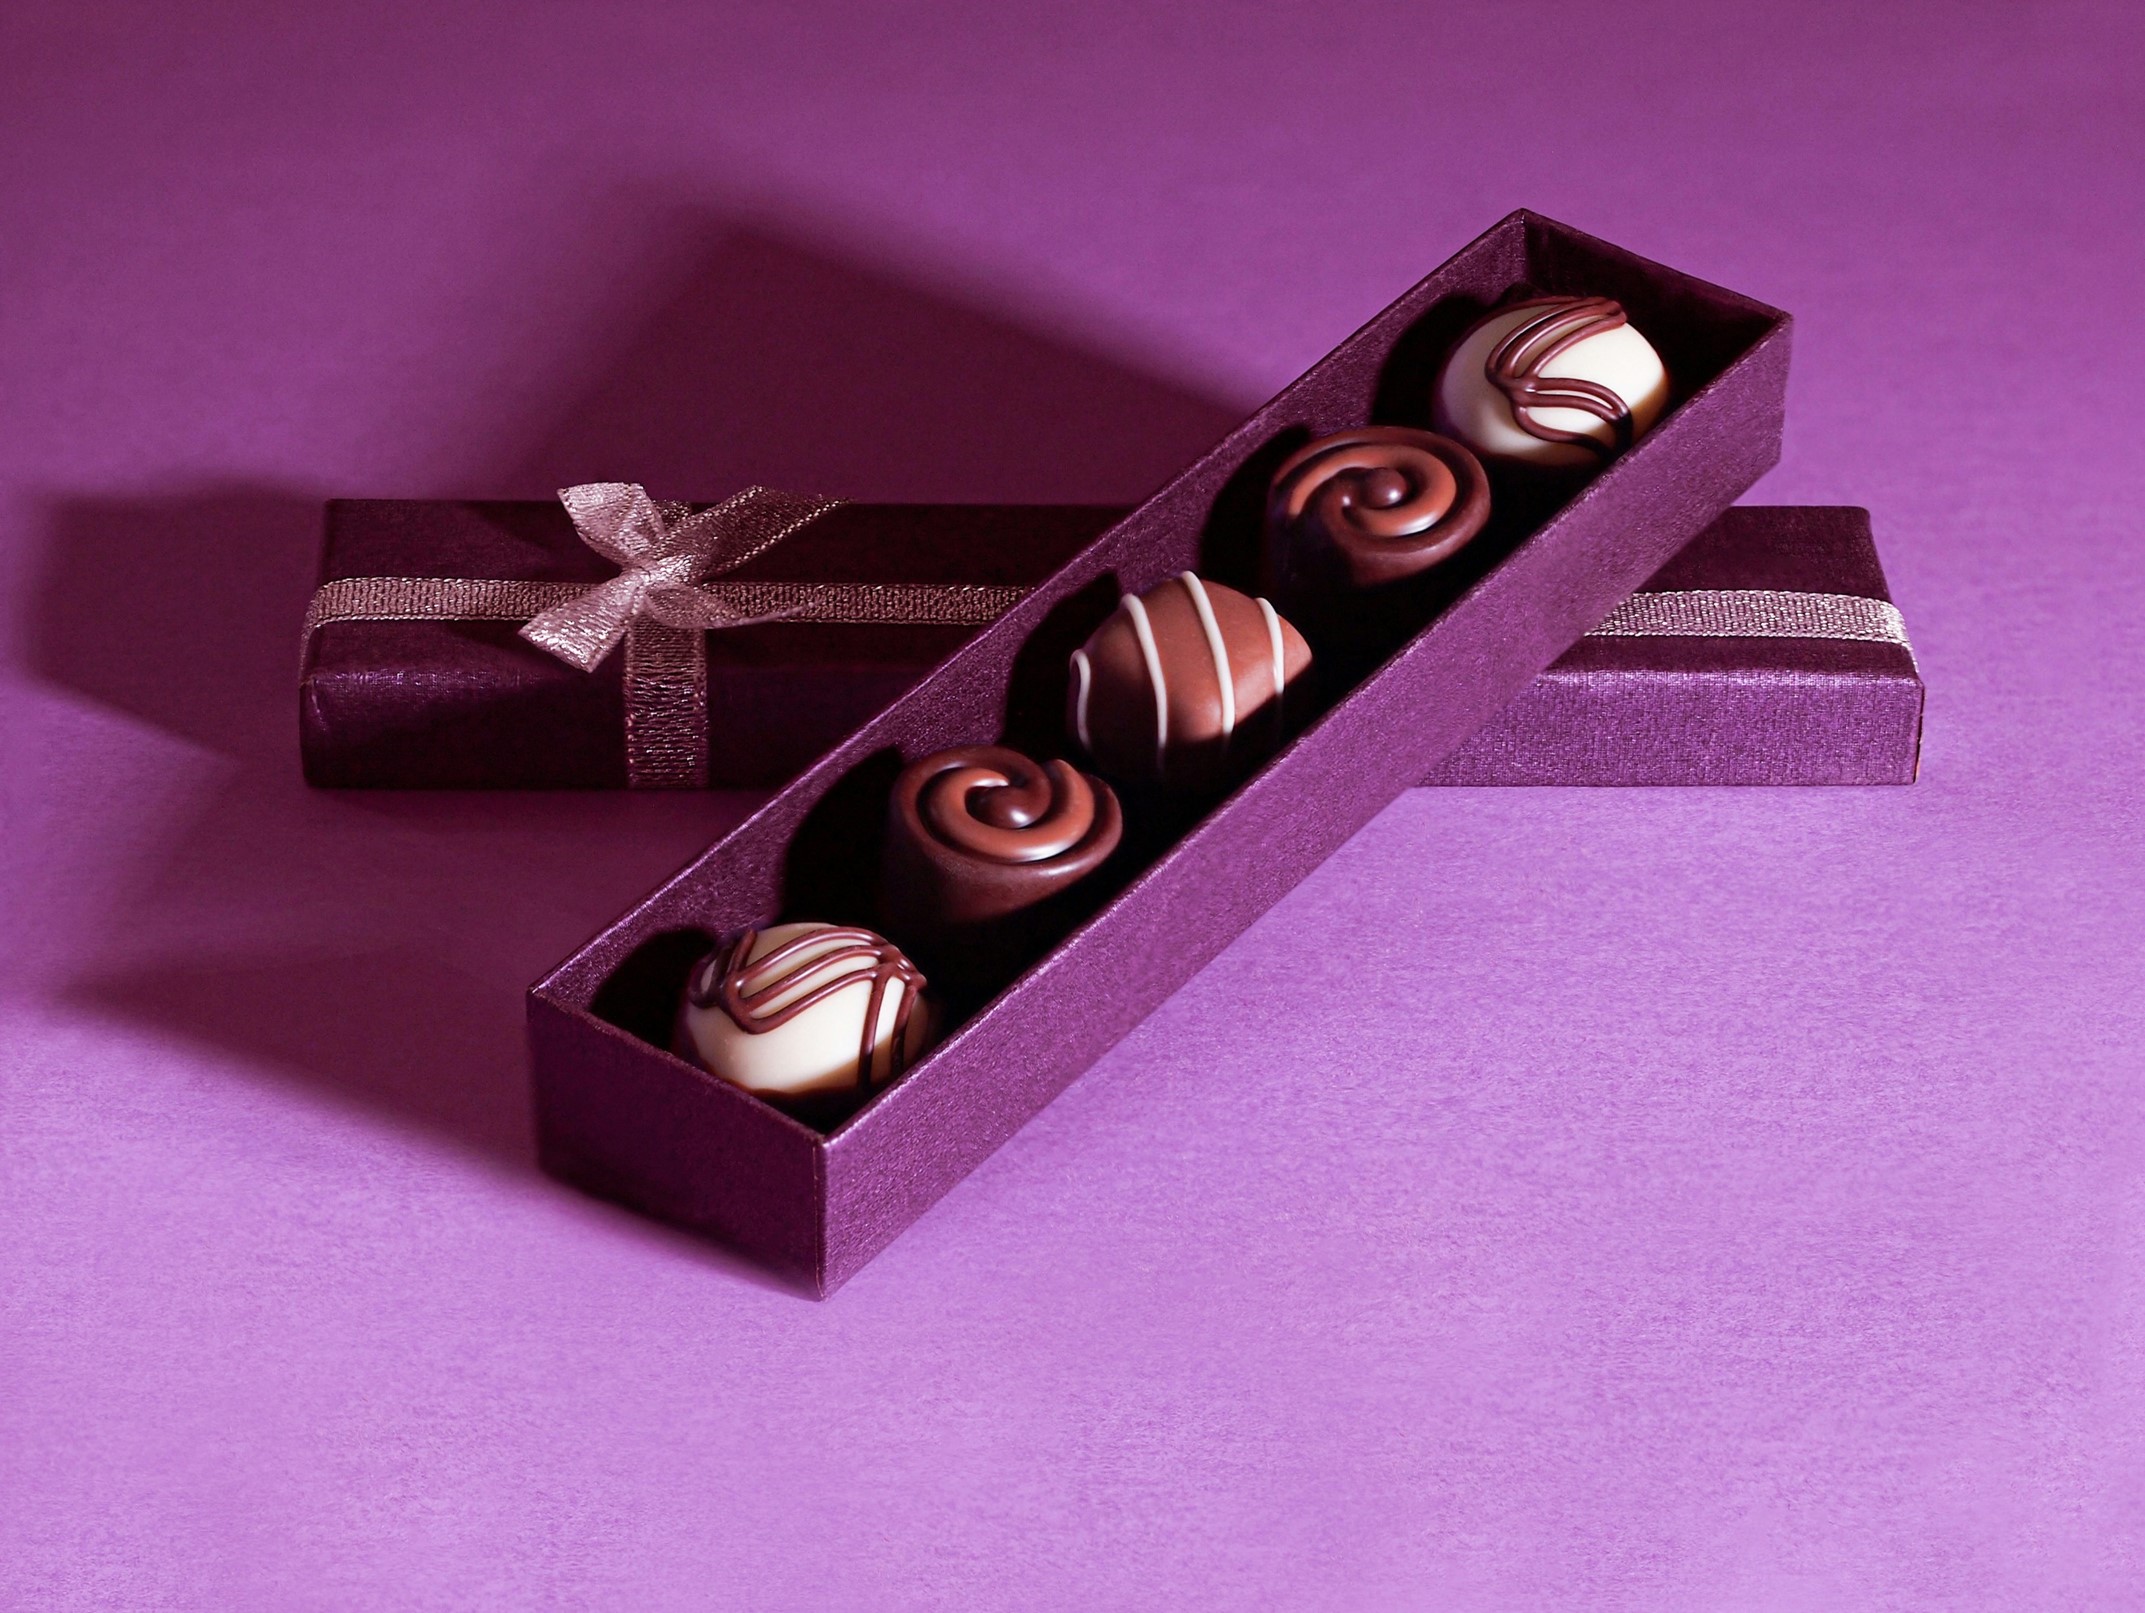 מתנה ליולדת או לחבר עצוב: למה שוקולד כל כך מנחם אותנו?